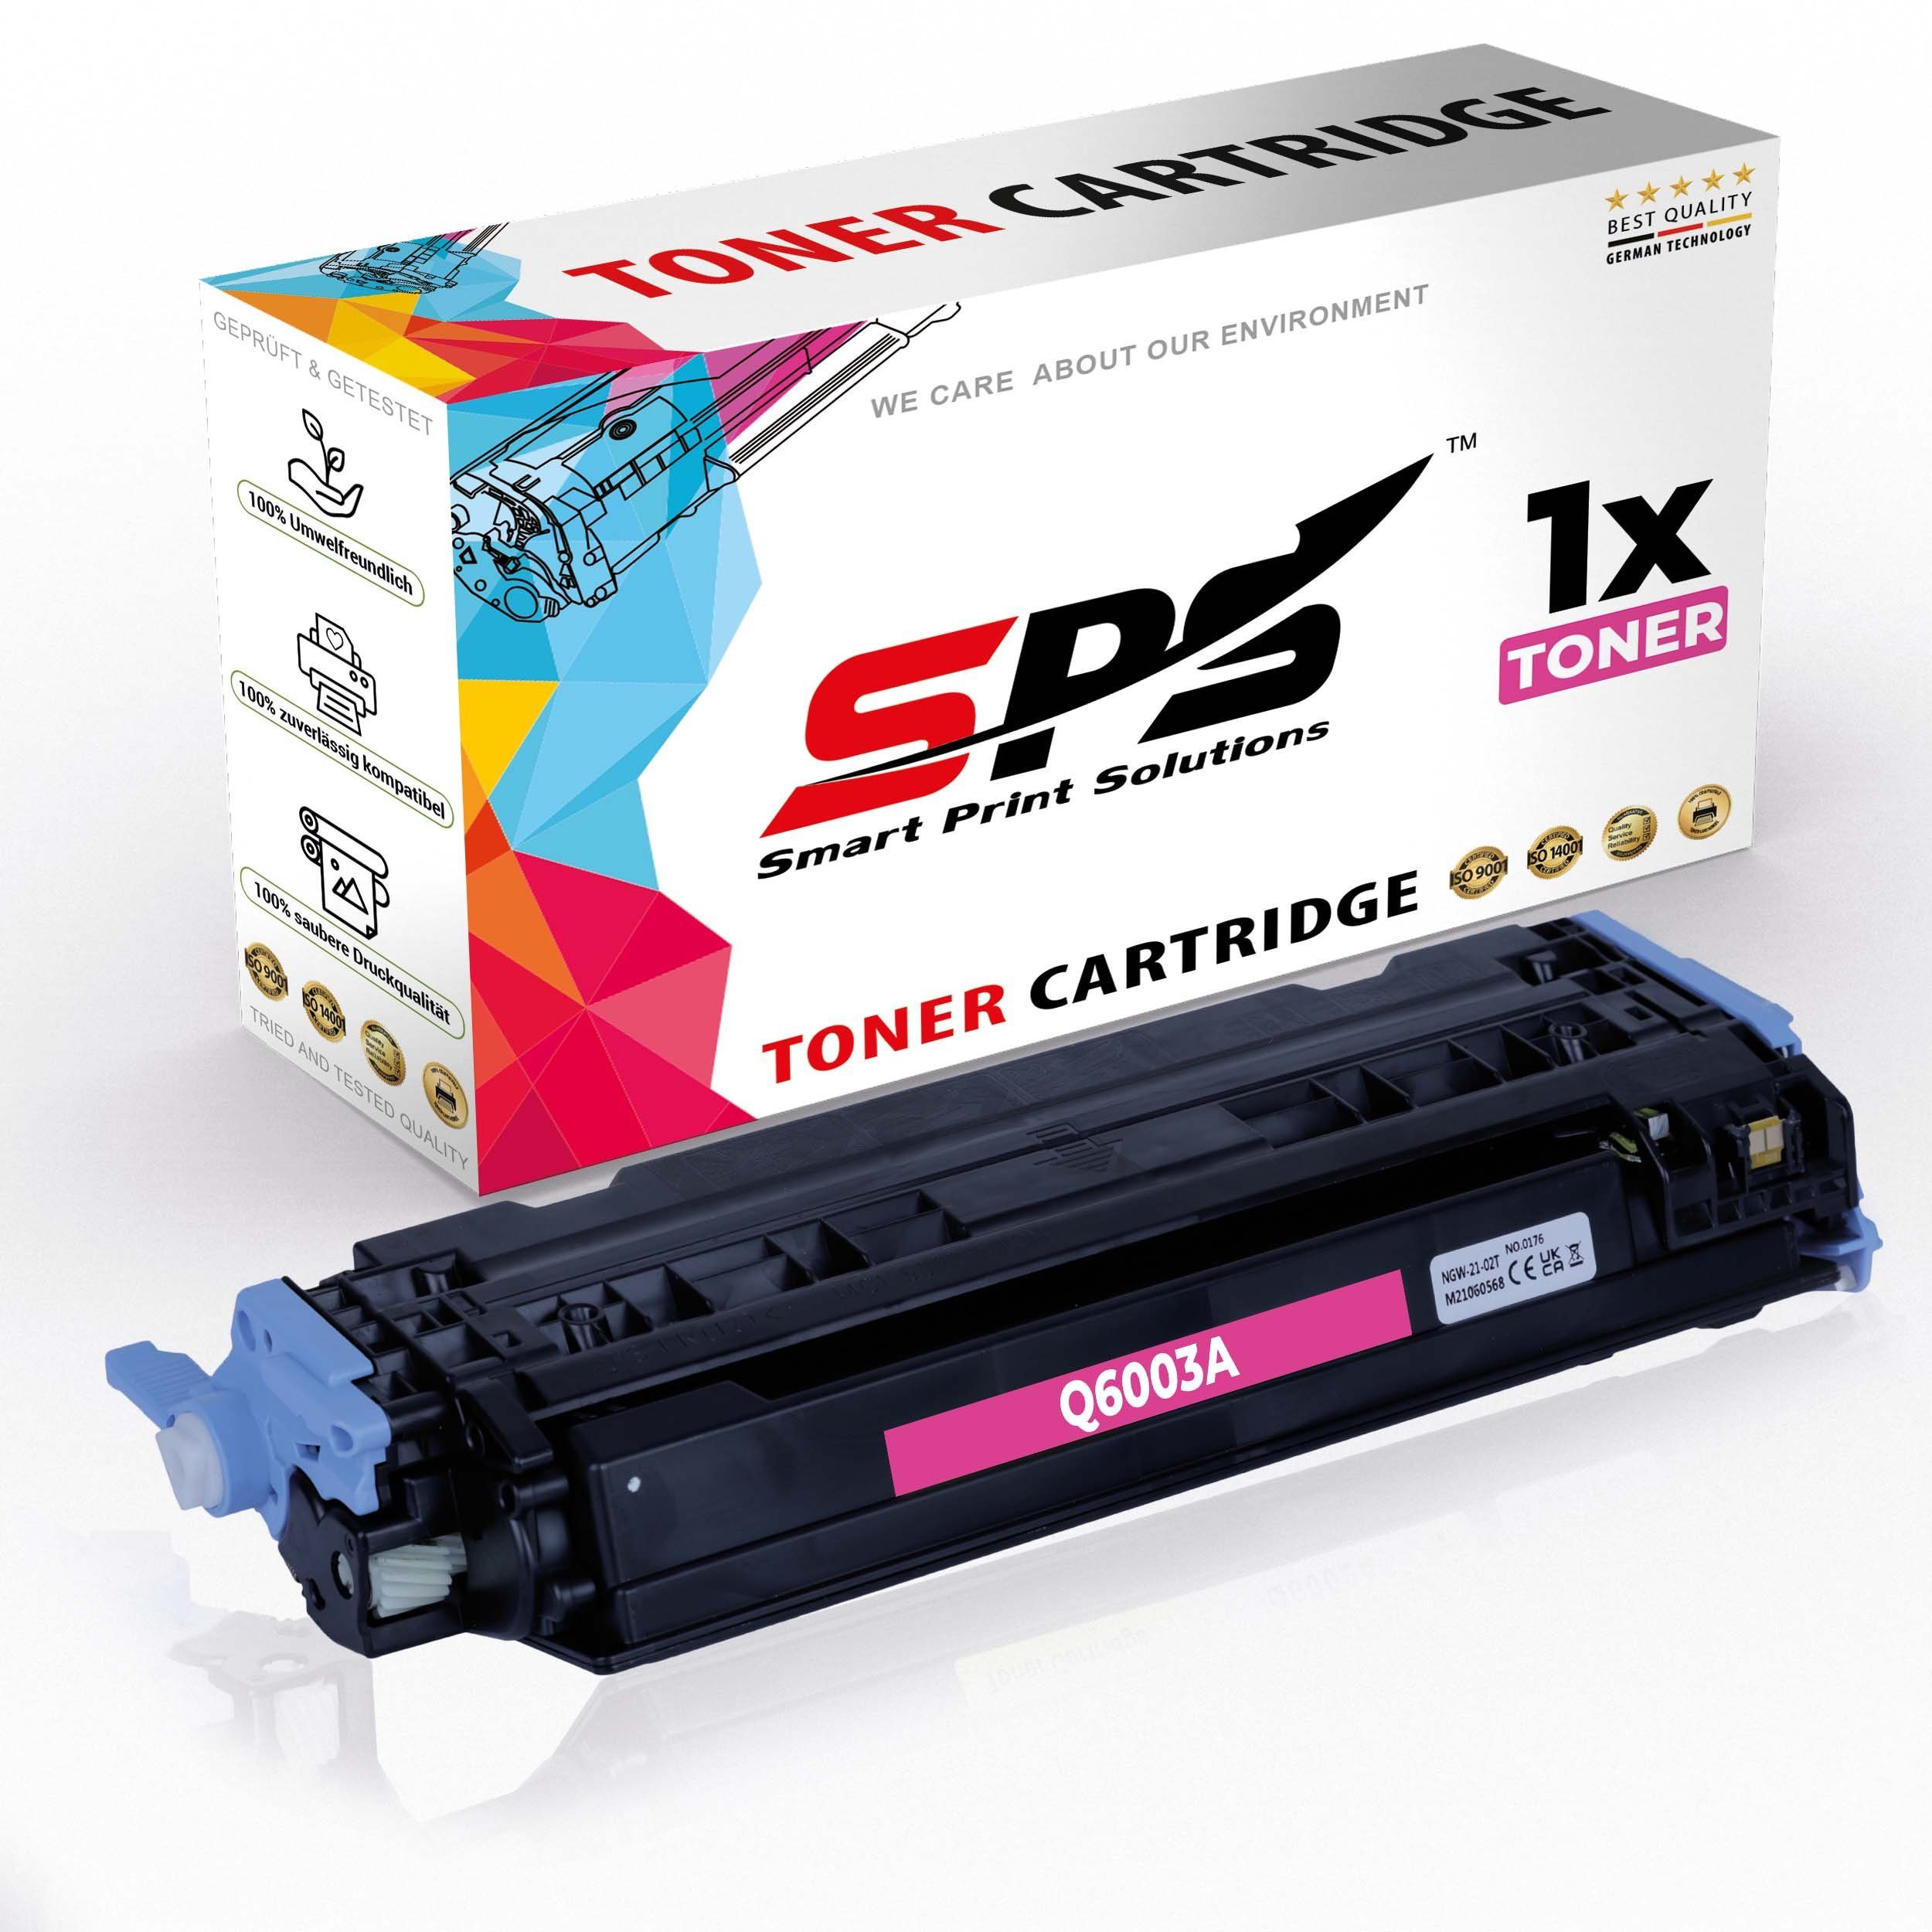 SPS 1x HP LaserJet (1er (Q6003A/12, 2600 für Color Pack, N Kompatibel Tonerkartusche Toner)